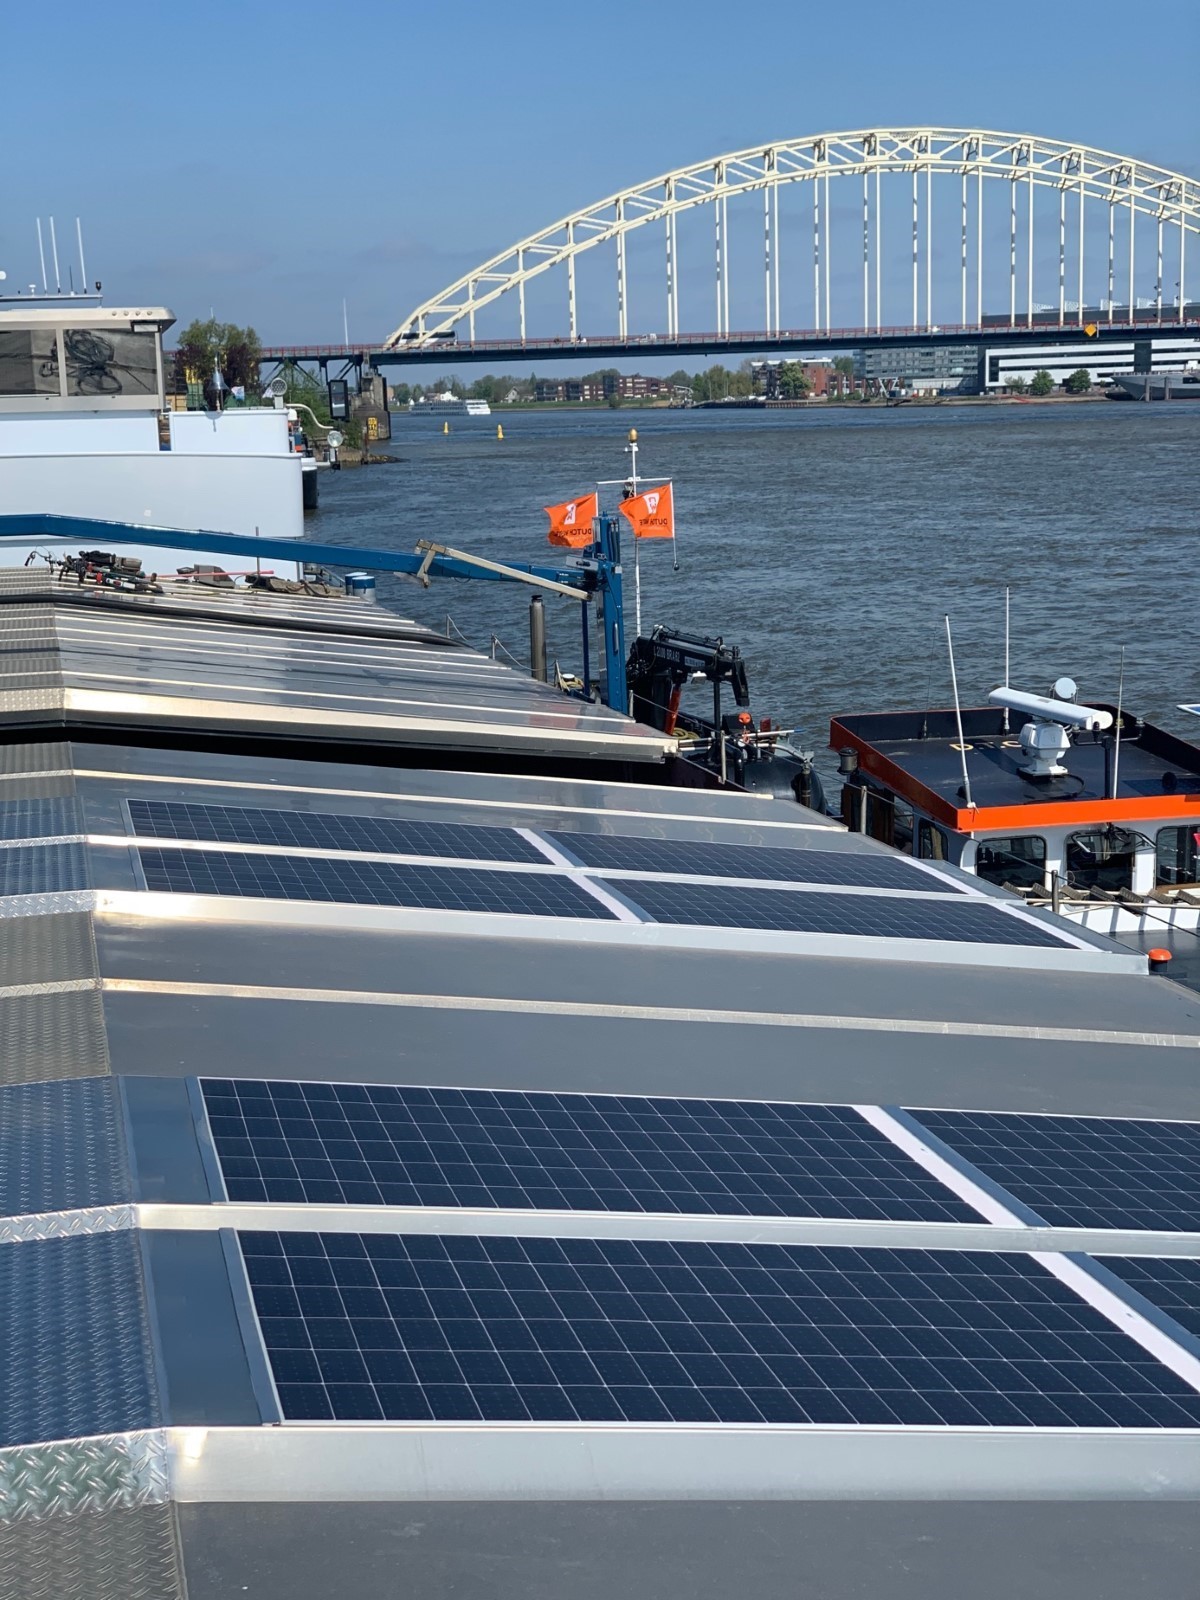 De zonnepanelen op MS Concordia zijn minder dan 3 millimeter dik. Op zonnige dagen wekken de Solarluiken aan boord de MS Concordia ruim 45 kWh op.